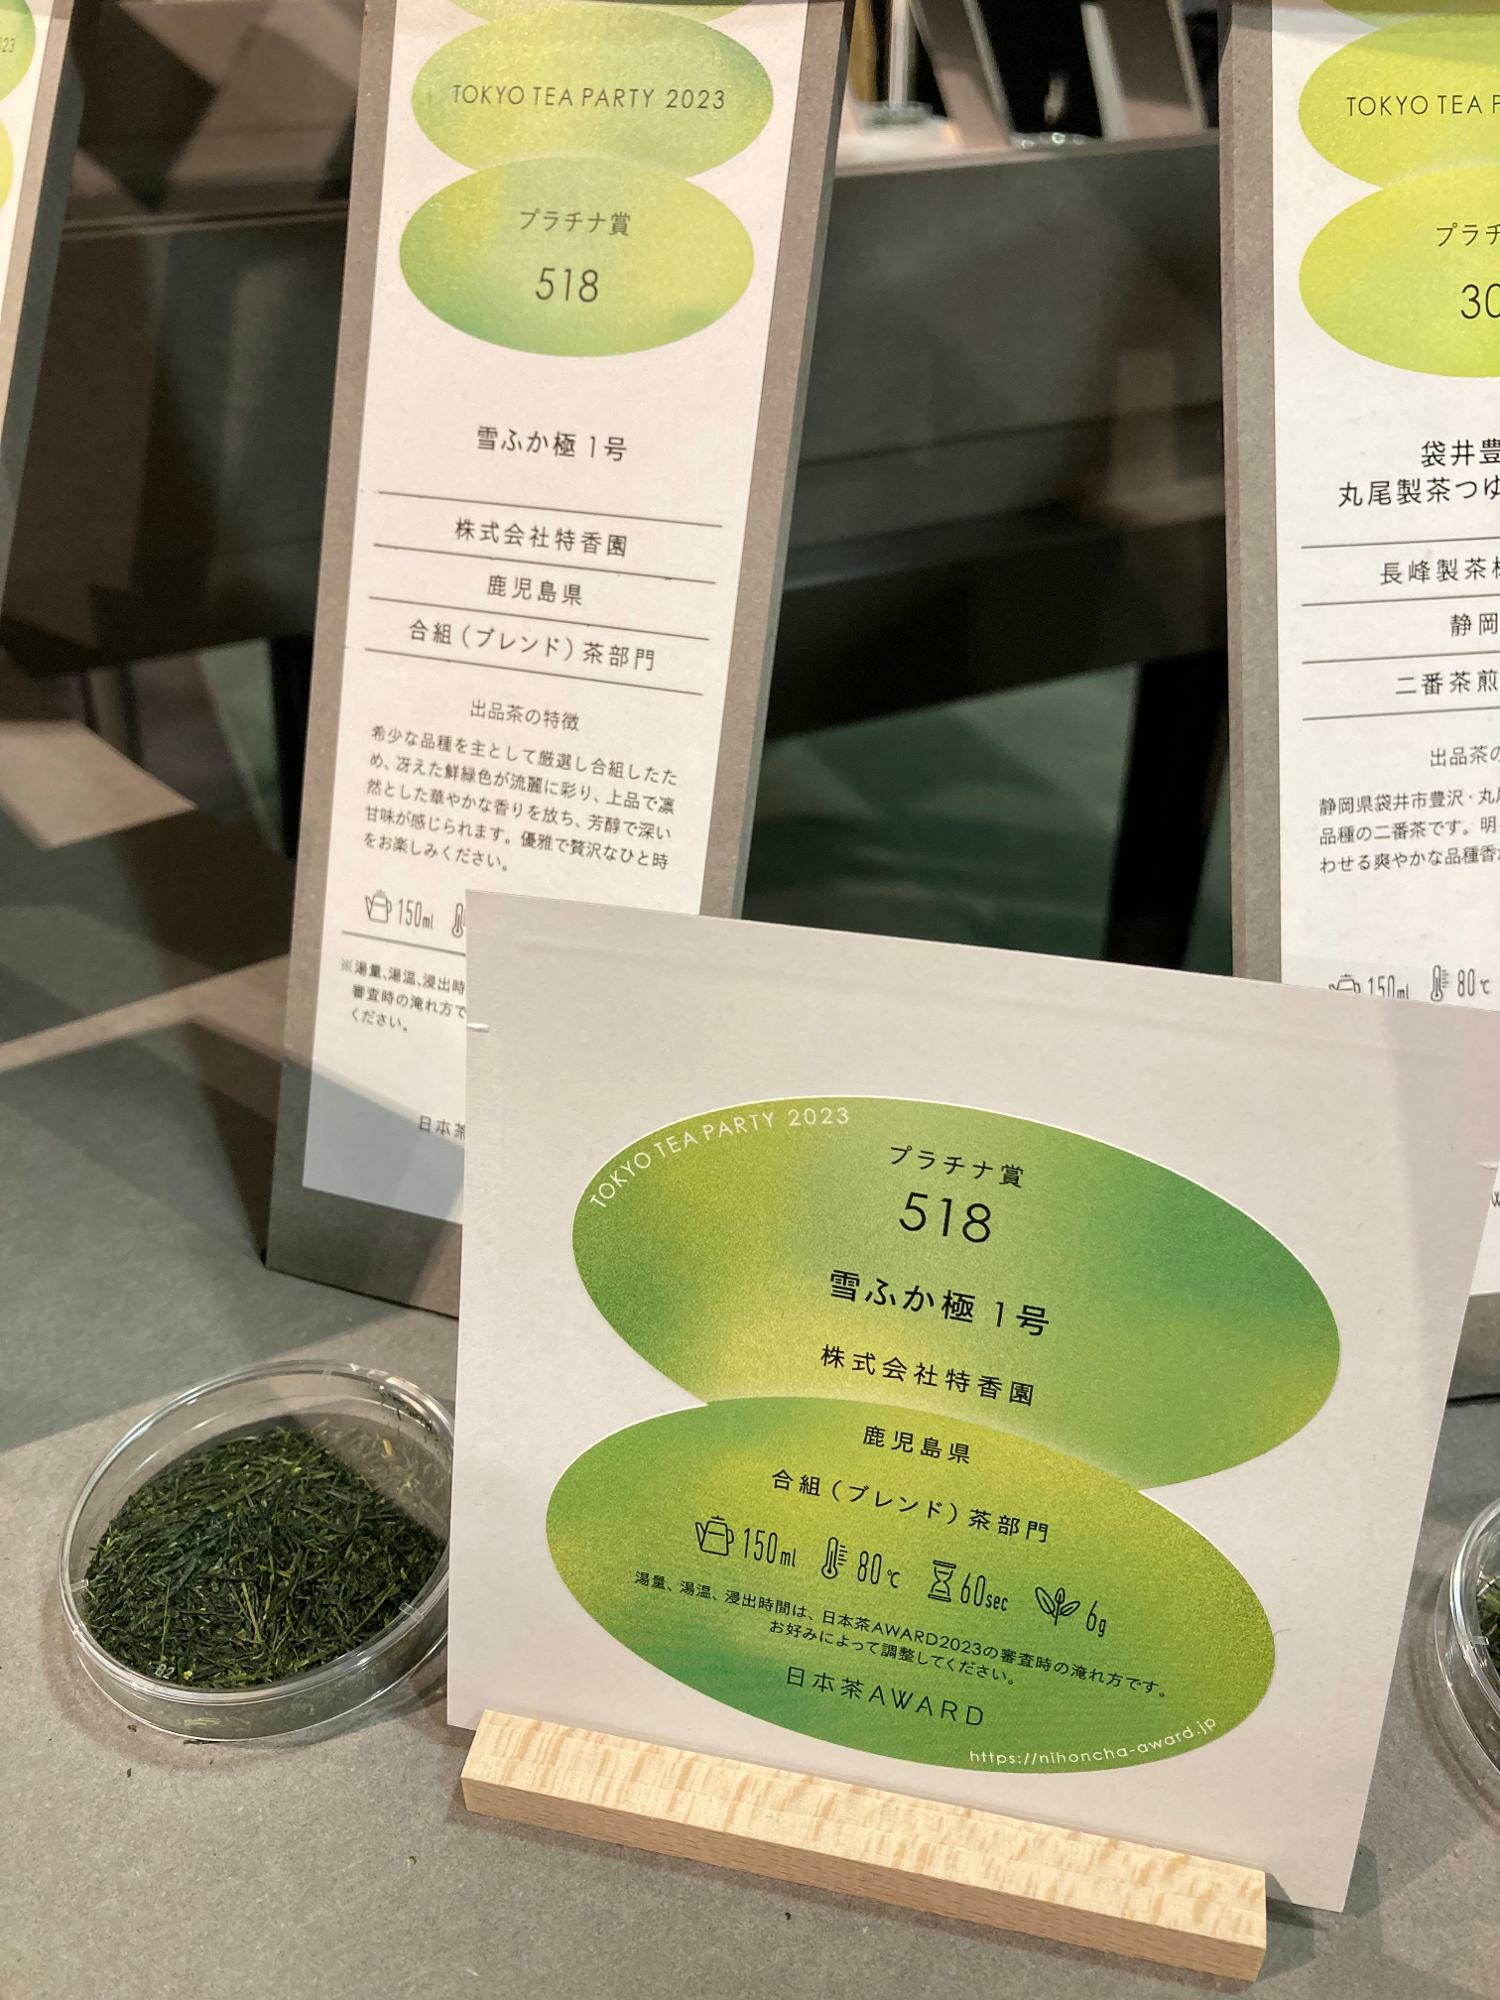 ディスプレイに展示されている日本茶大賞・農林水産大臣賞の「雪ふか1号」の茶葉